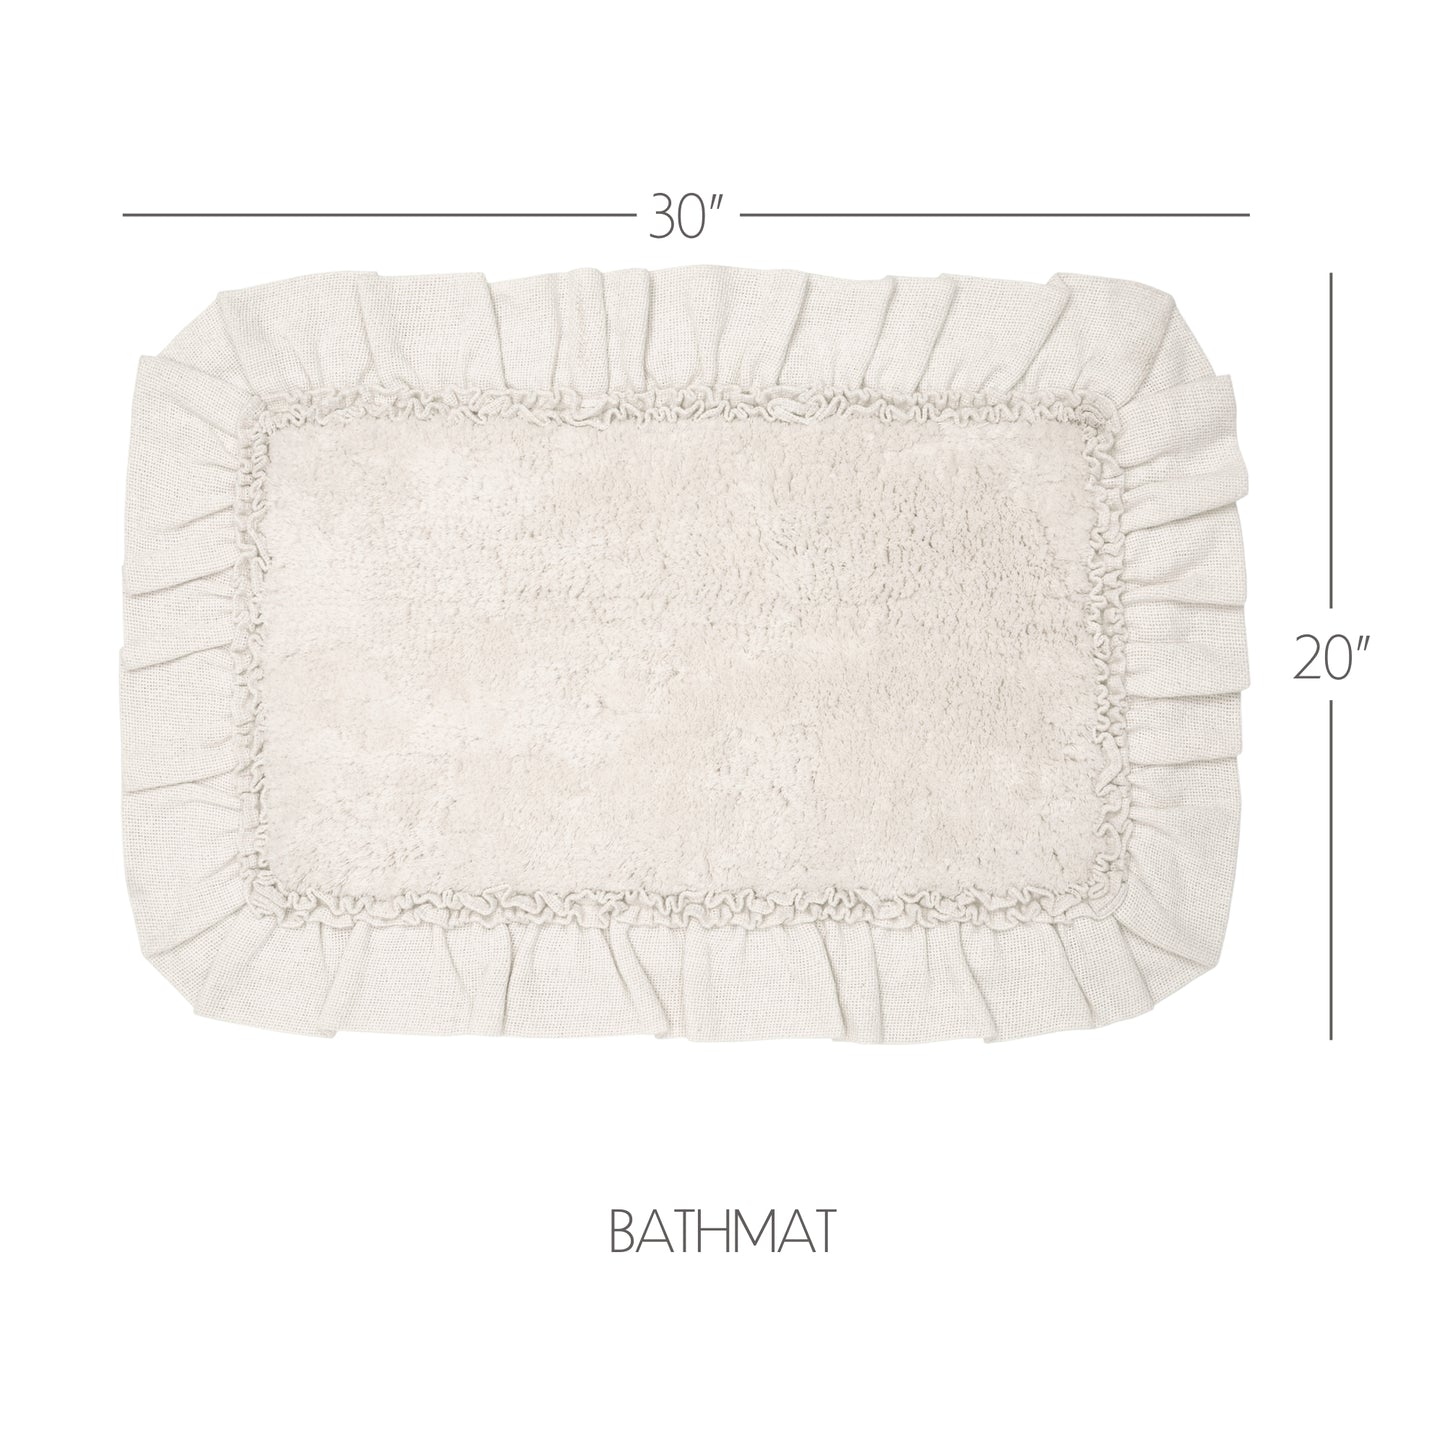 80270-Burlap-Antique-White-Bathmat-20x30-image-6